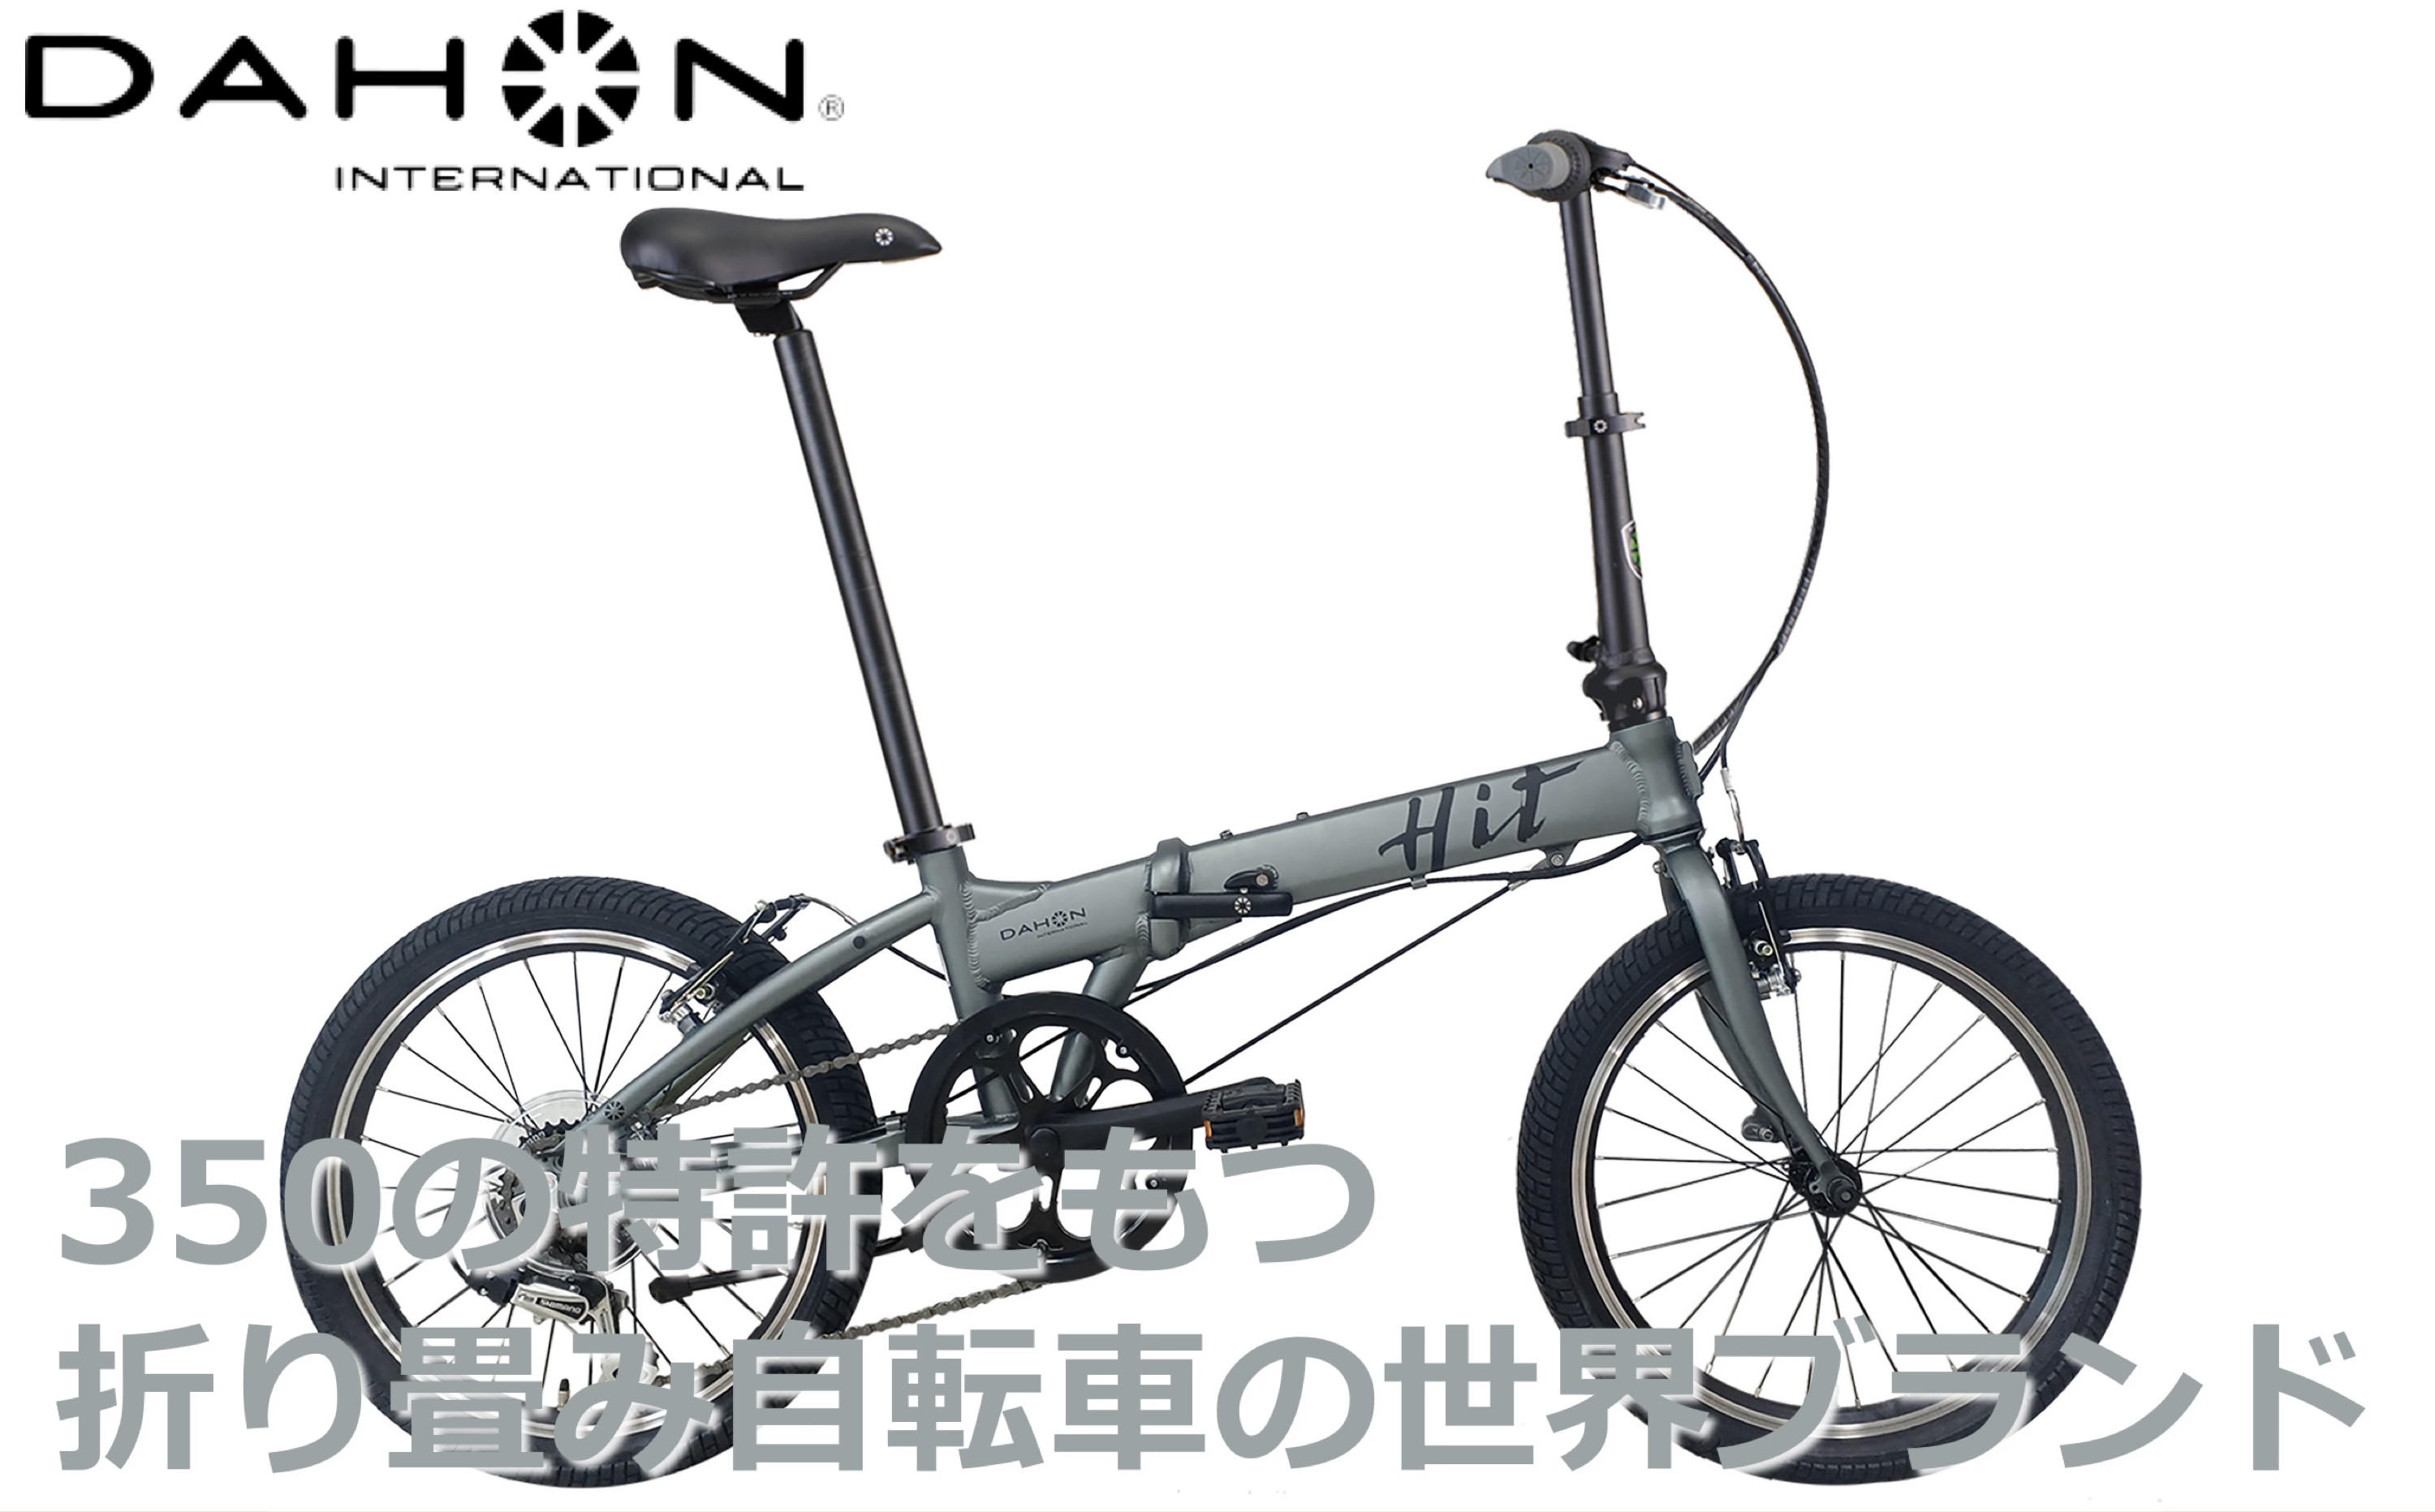 
40年の歴史をもつ米国ダホン社の高性能折り畳み自転車 DAHON International Folding Bike Hit Limited Edition
